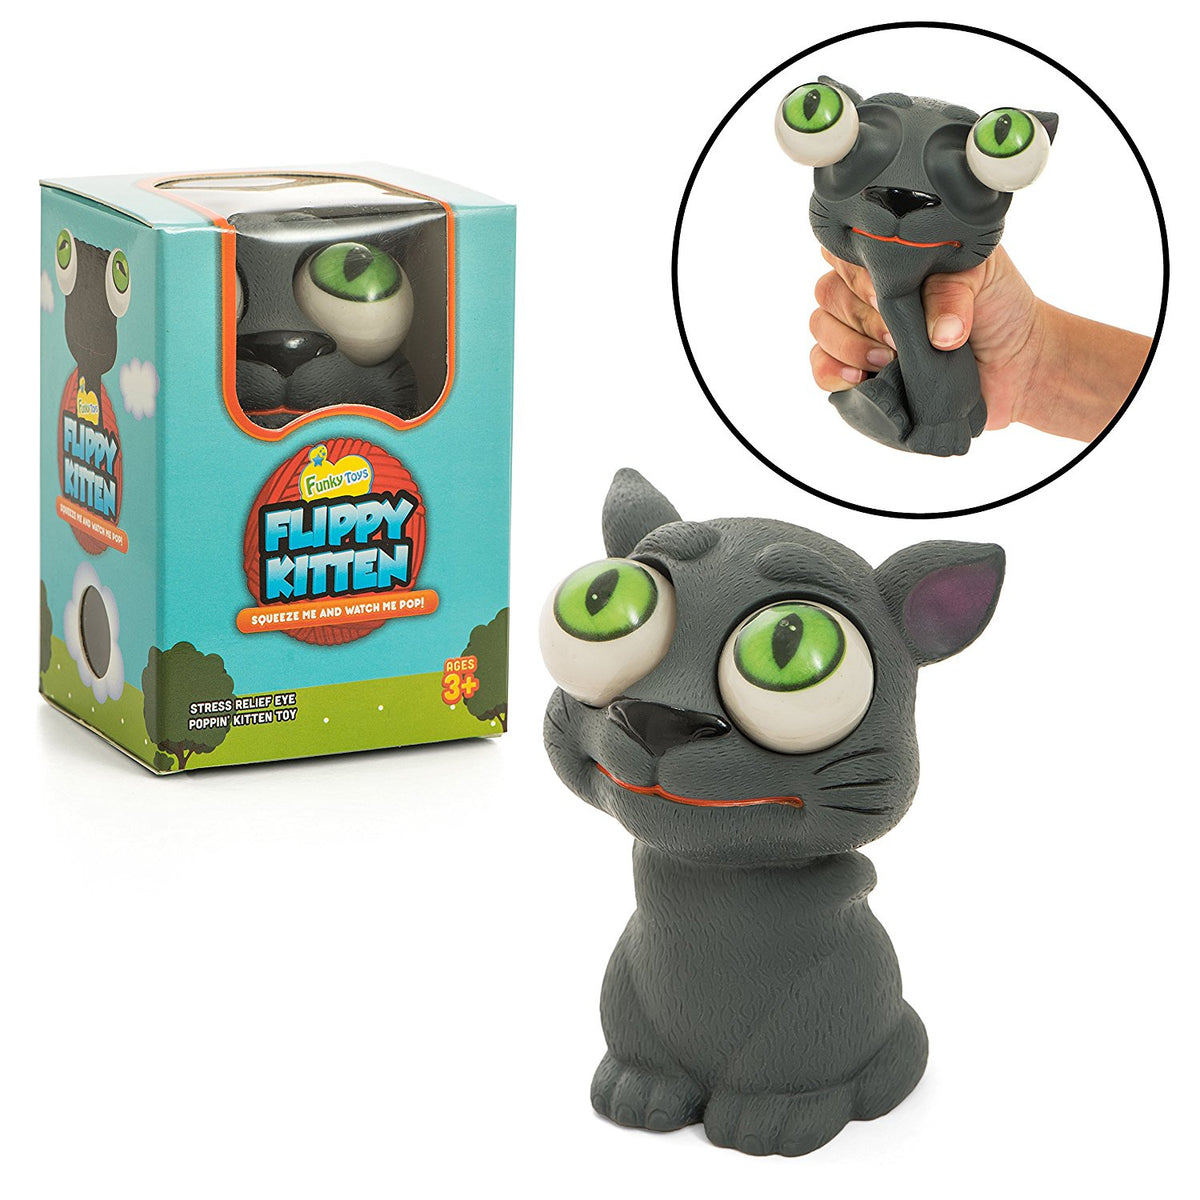 Poppin’ Peepers Flippy Kitten - Funky Toys